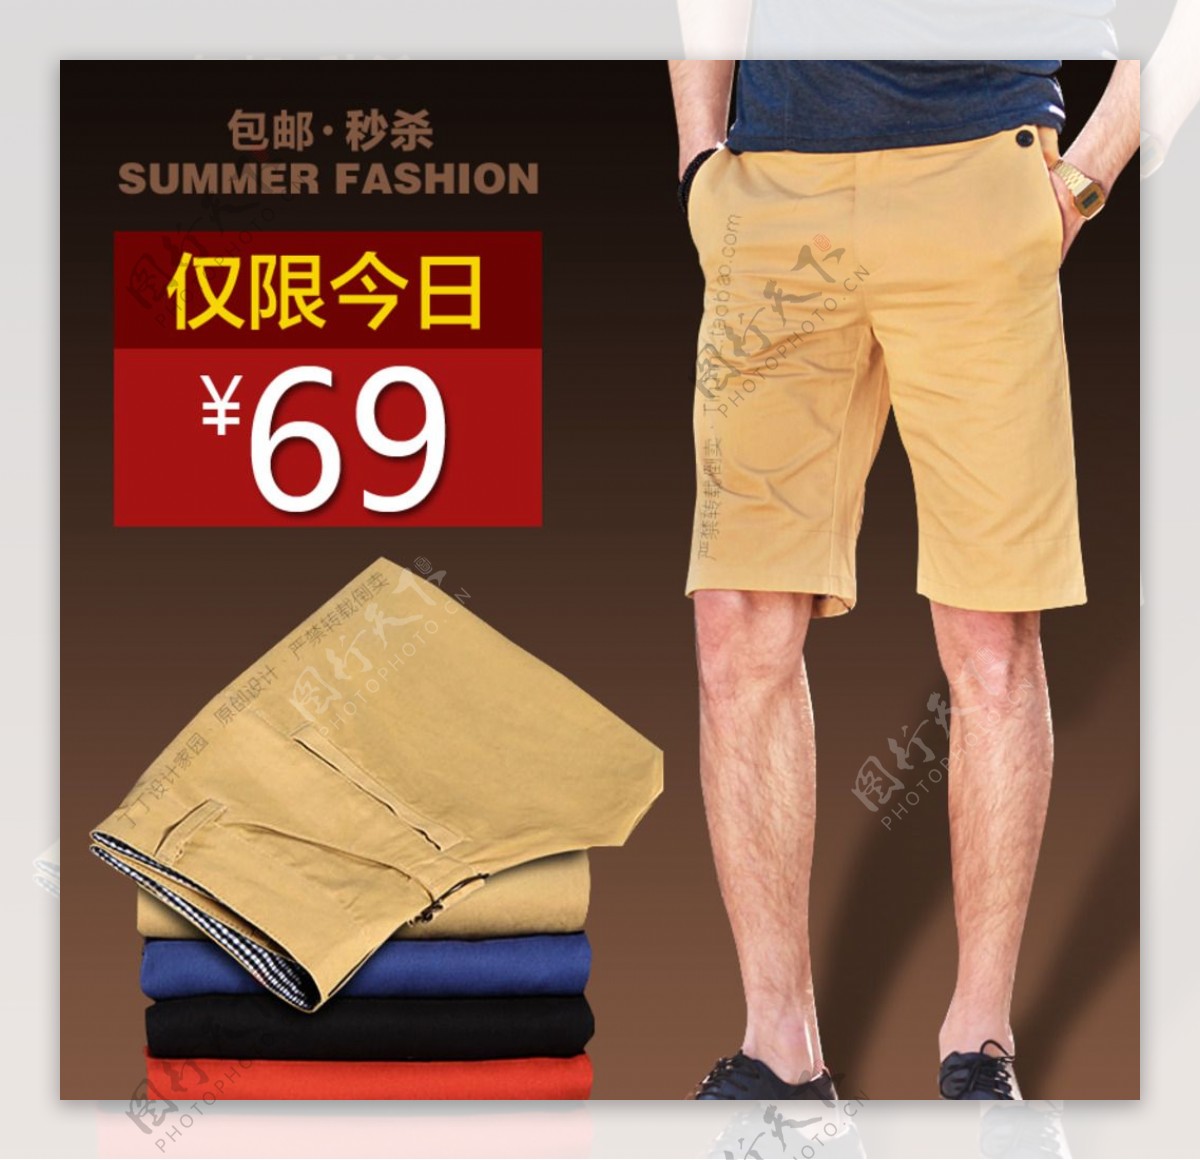 男士短裤展示促销折扣标签